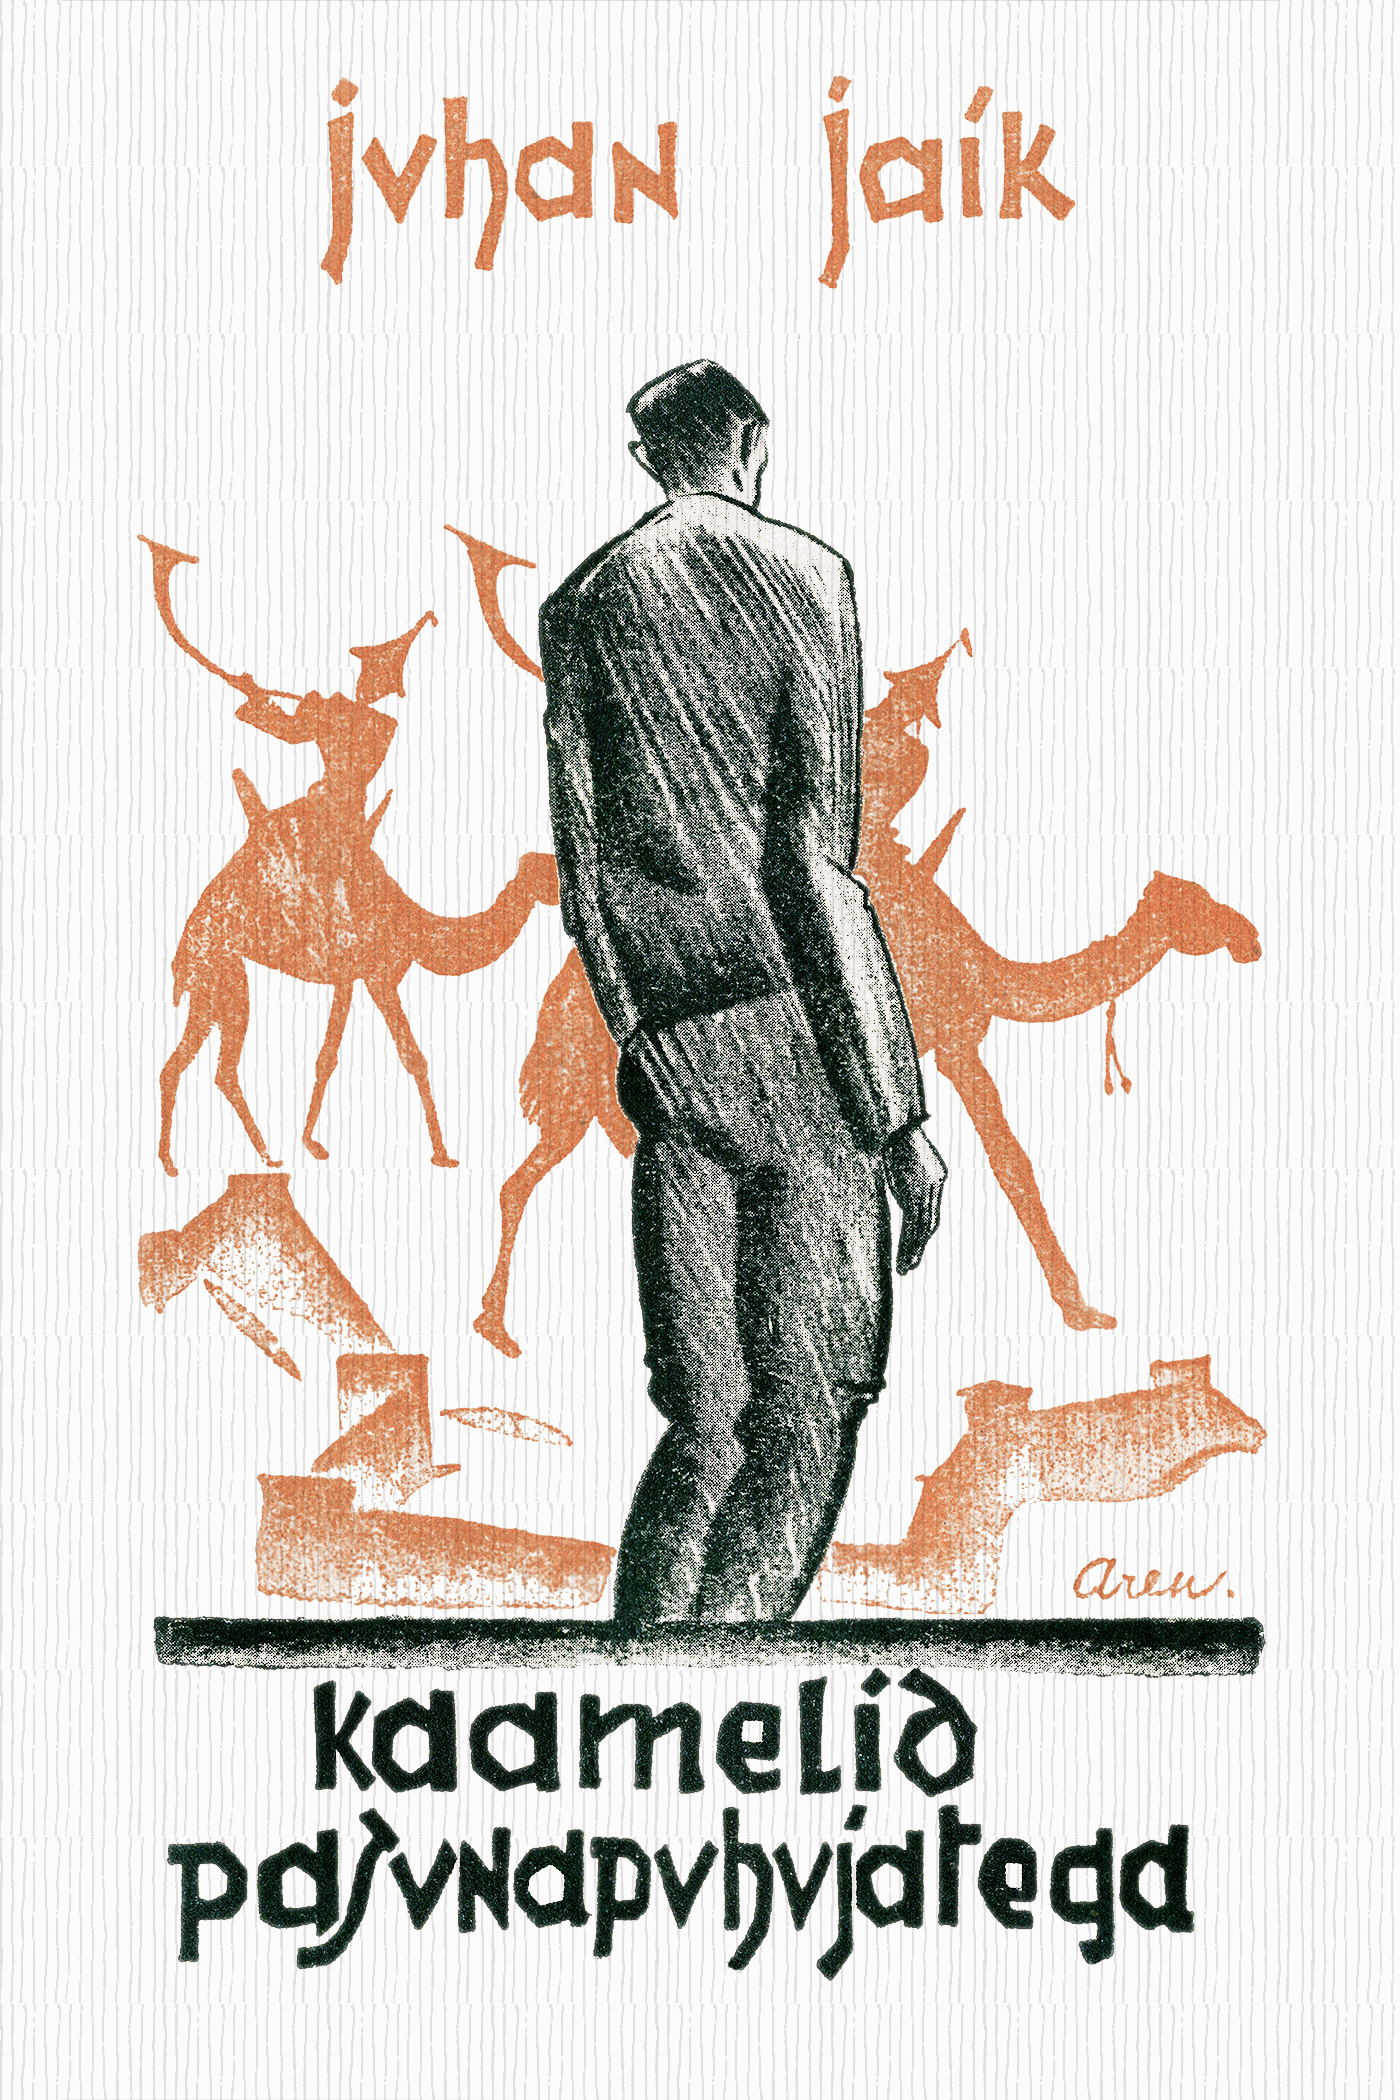 Книга Kaamelid pasunapuhujatega из серии , созданная Juhan Jaik, может относится к жанру Зарубежная классика, Литература 20 века. Стоимость электронной книги Kaamelid pasunapuhujatega с идентификатором 42829162 составляет 505.86 руб.